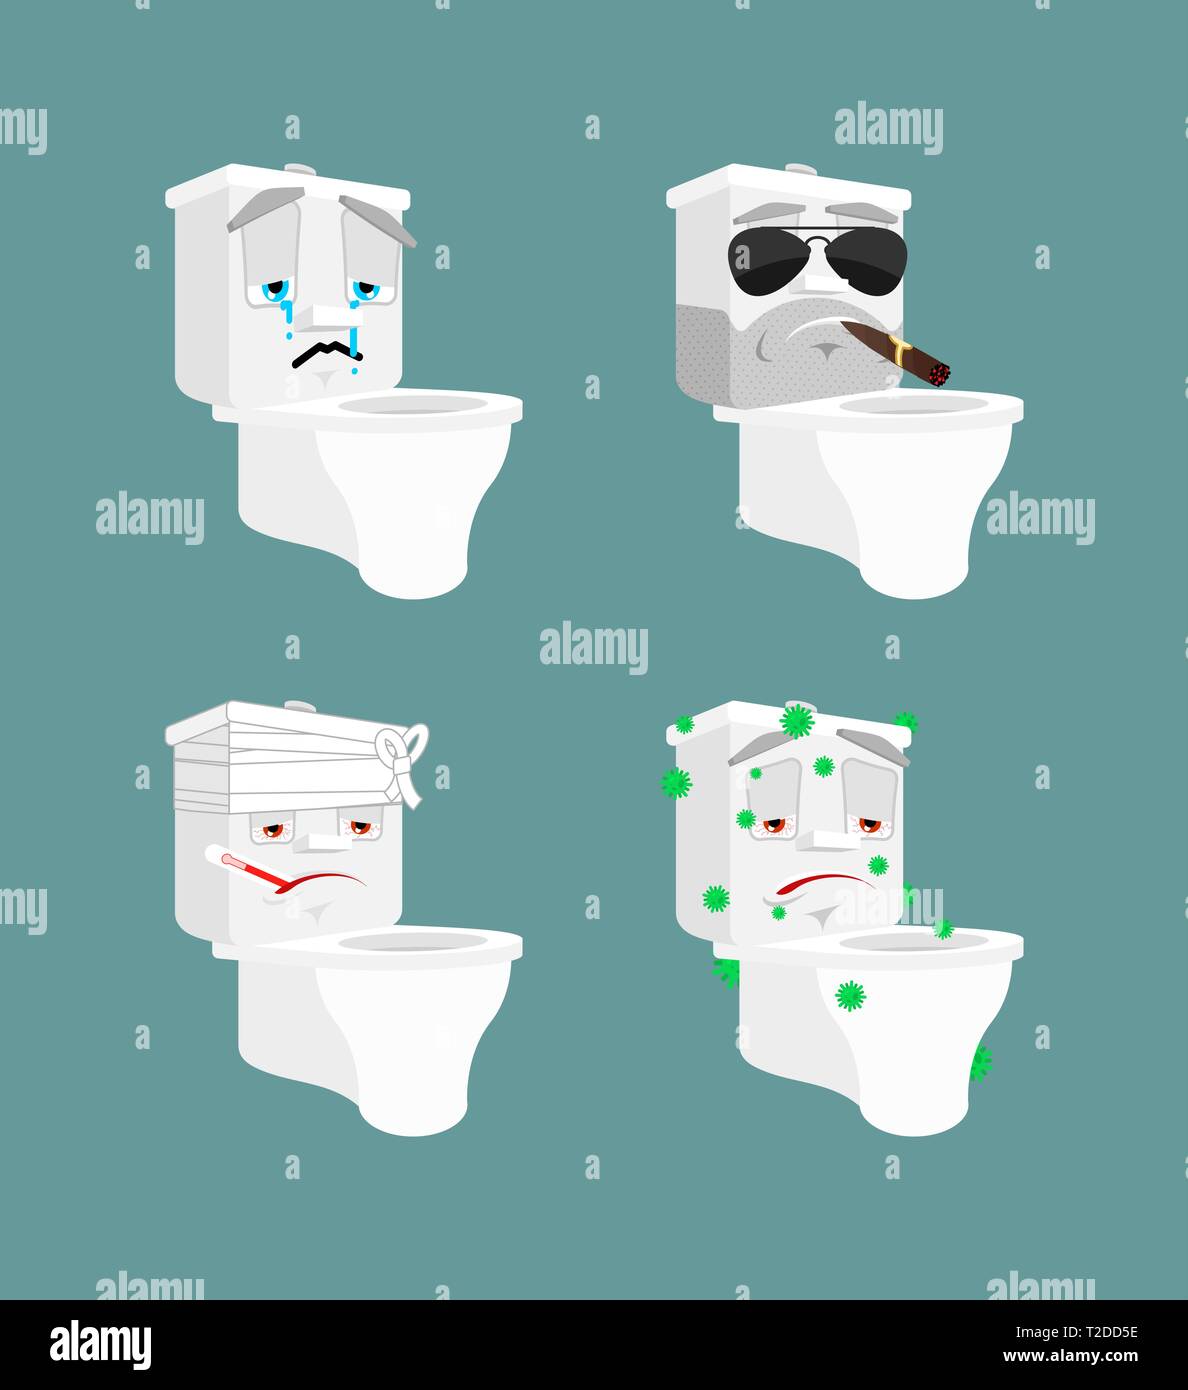 Wc-Schüssel emoji 1 1. Toilette krank und traurig. Bandagiert und brutal. wc Sammlung von Situationen Stock Vektor